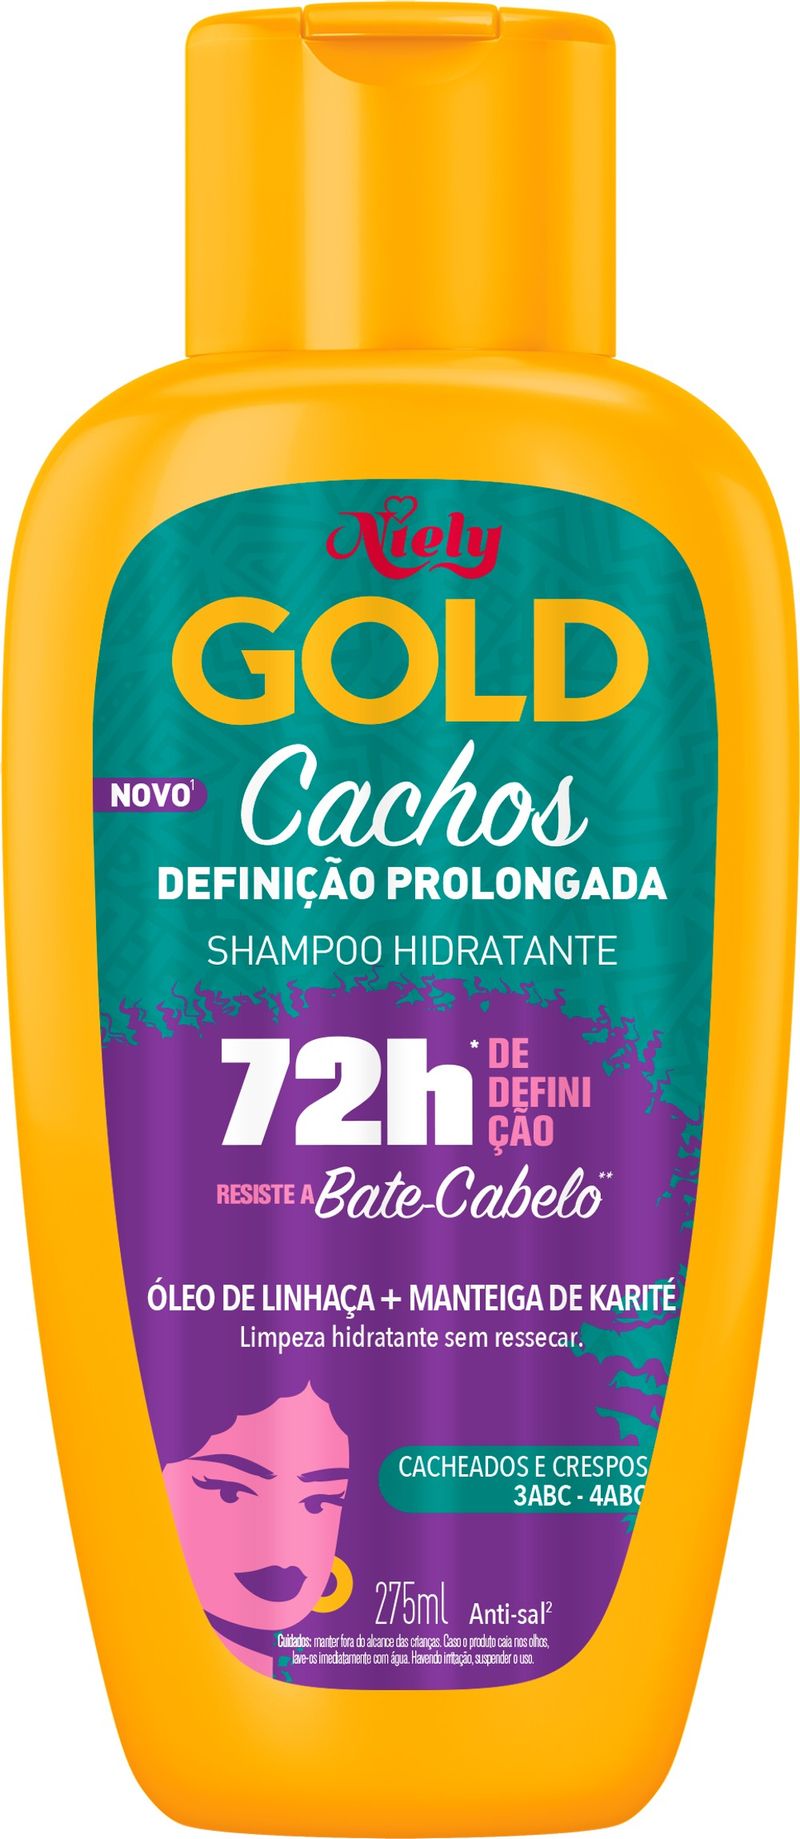 shampoo-niely-gold-cachos-definicao-prolongada-72h-com-275ml-principal